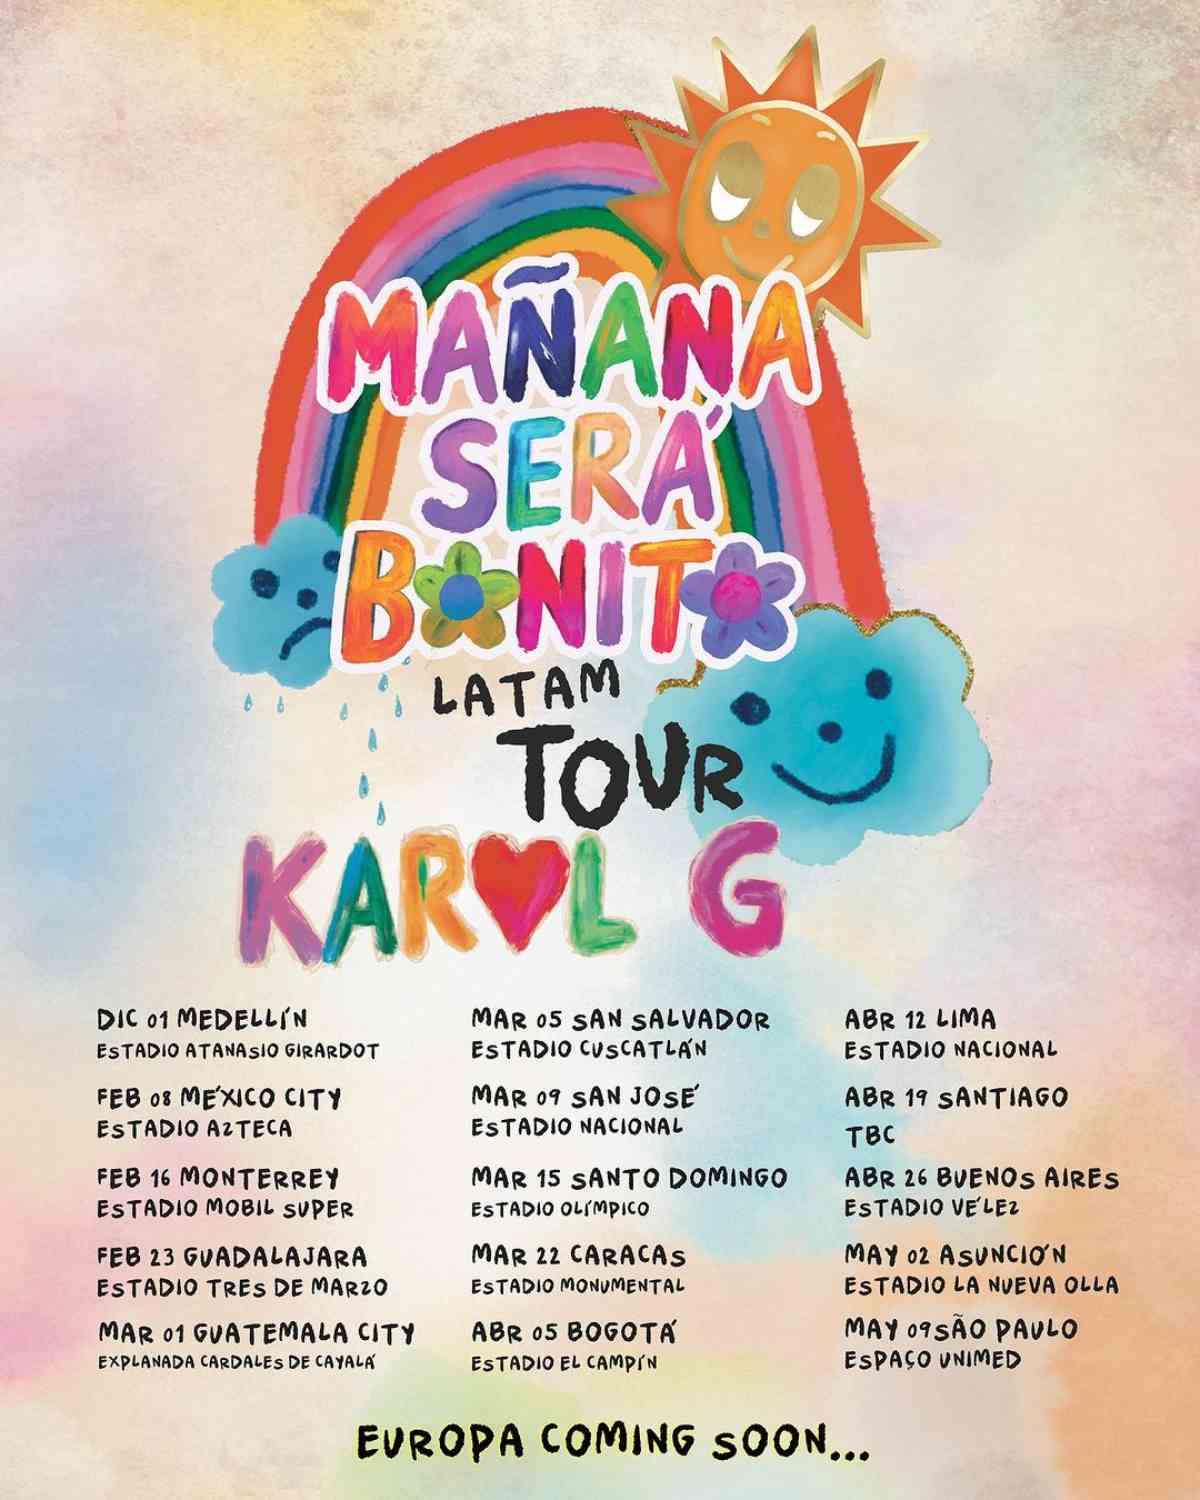 Este es el patrimonio de Karol G previo a su tour por Latinoamérica — LOS40  Chile